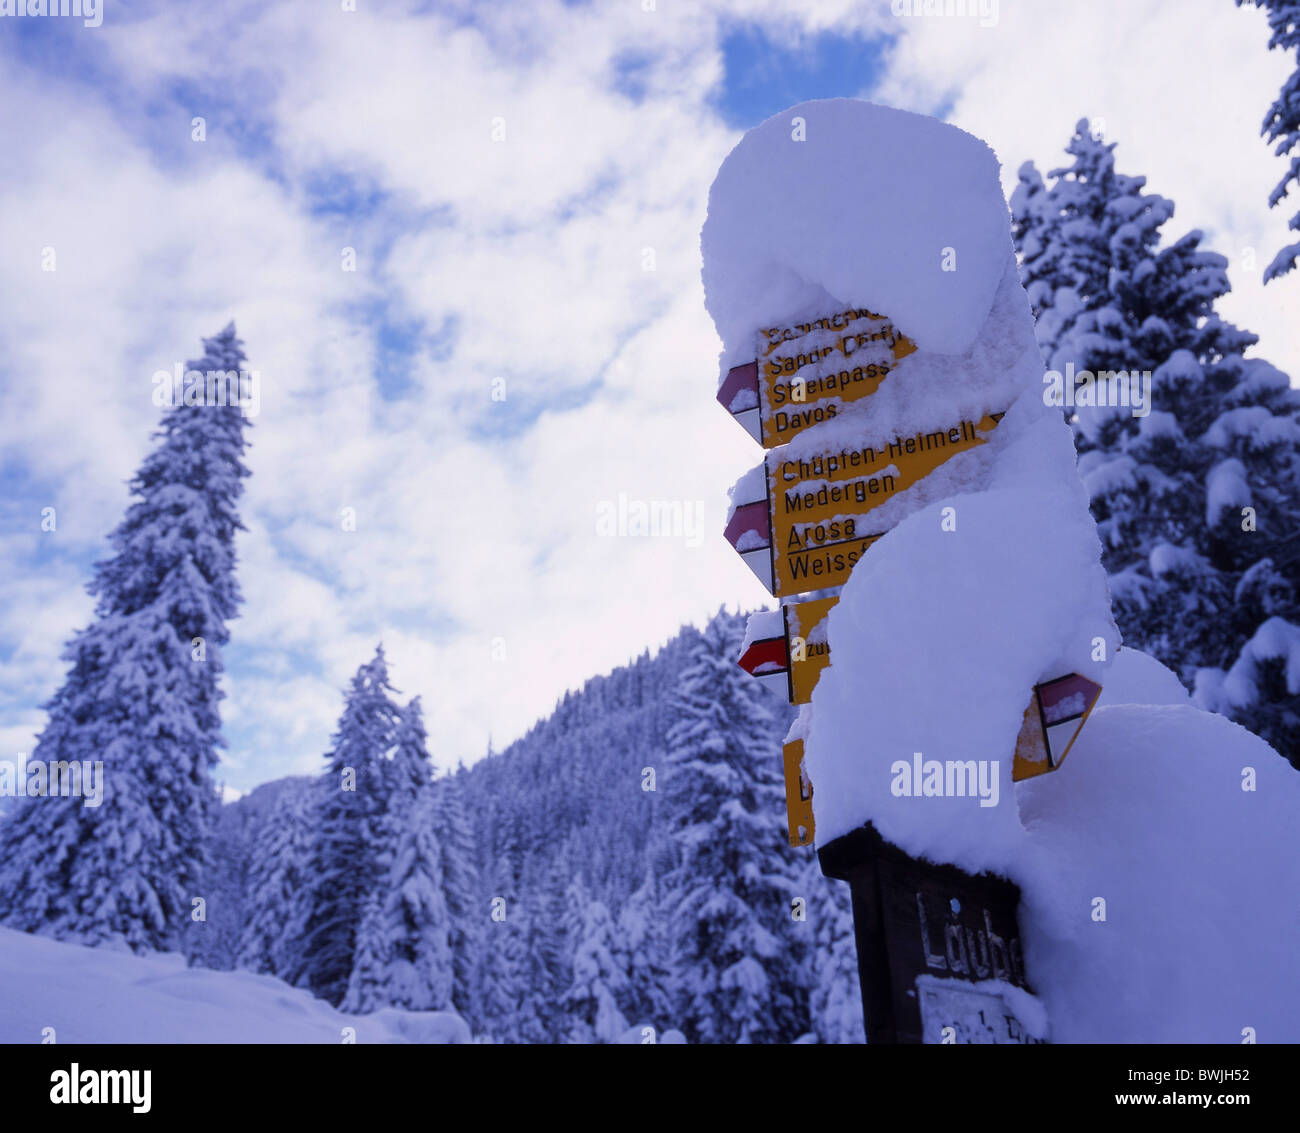 Snowbound signpost coperto di neve segni nevoso schede nevicata fresca neve sentiero invernale uomo saggio Schanfigg w Foto Stock